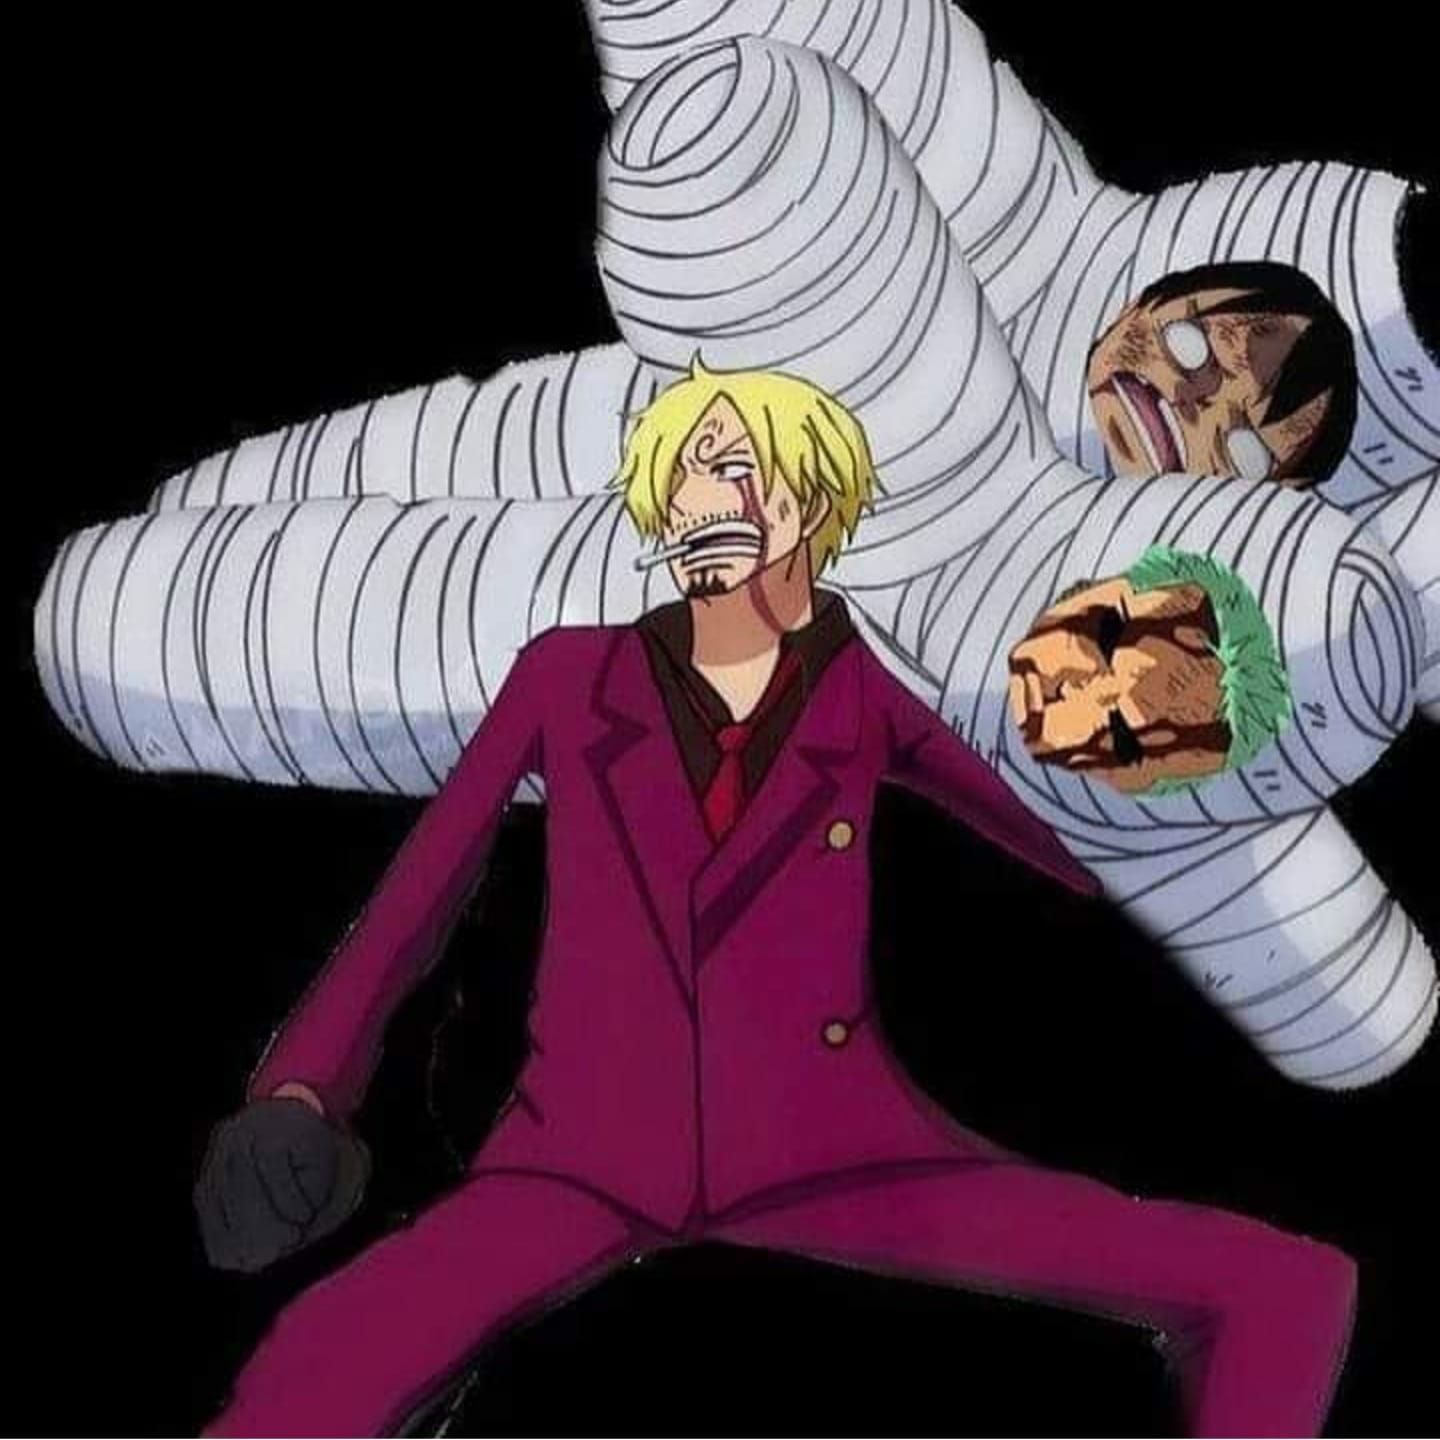 Những ảnh chế về Sanji trong bộ truyện One Piece dường như đã trở thành đề tài hot nhất trong cộng đồng mạng. Nếu bạn muốn xem tấm ảnh chế hài hước về Sanji, hãy đến xem ngay.